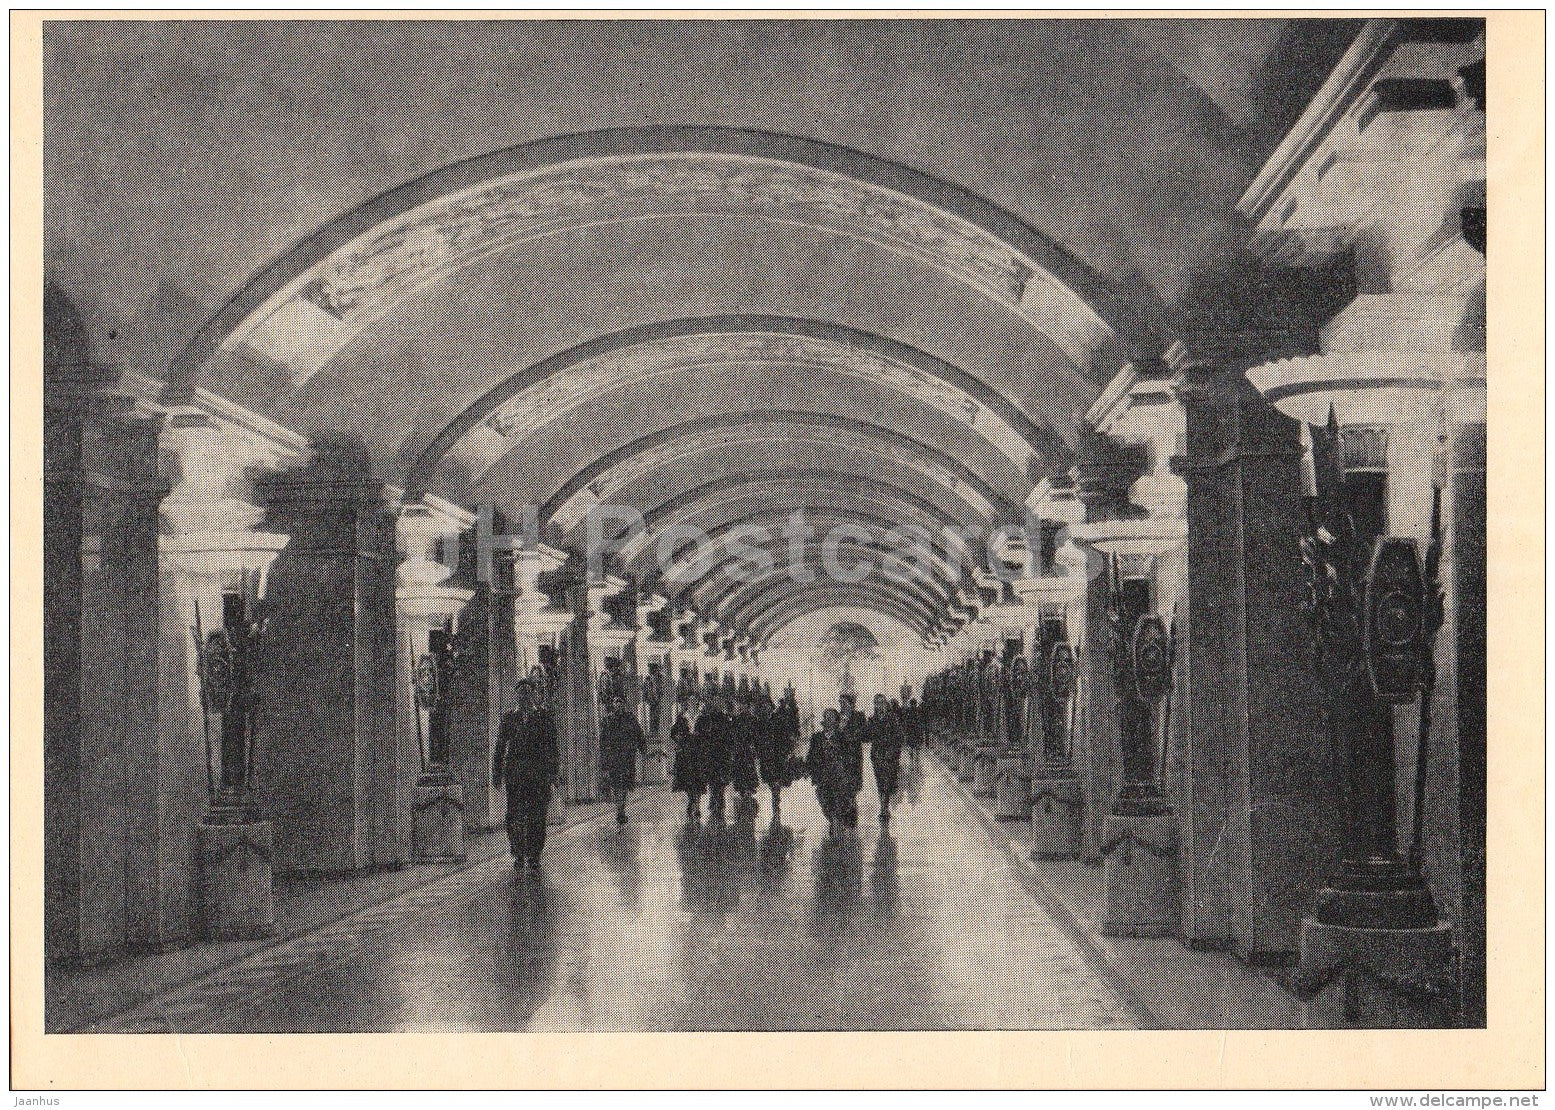 Pushkinskaya station , Platform hall - Leningrad Metro - subway - St. Petersburg - 1960 - Russia USSR - unused - JH Postcards